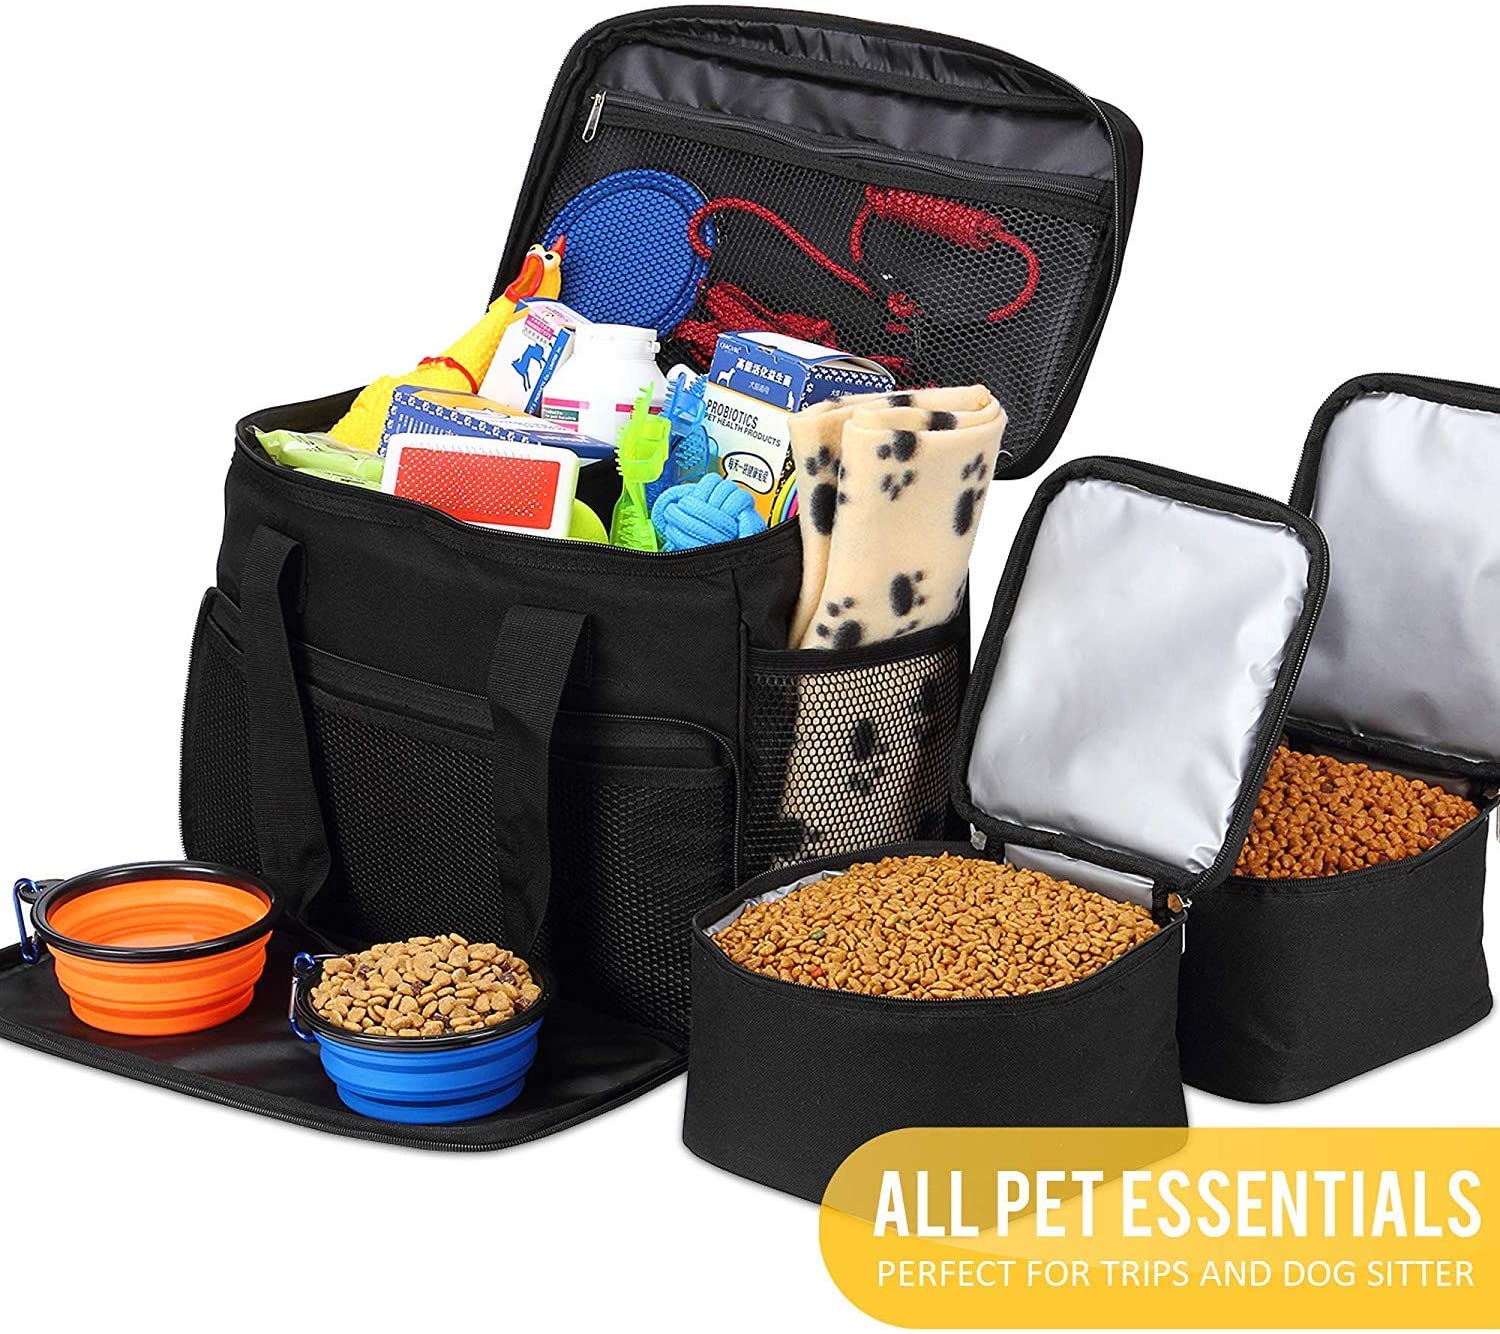  KOPEKS Bolsa de Viaje para Perros, Gatos, Mascotas, Bolso Térmico con Compartimientos, Comedero y Bebedero Plegables - Kit de Viaje - Negro 